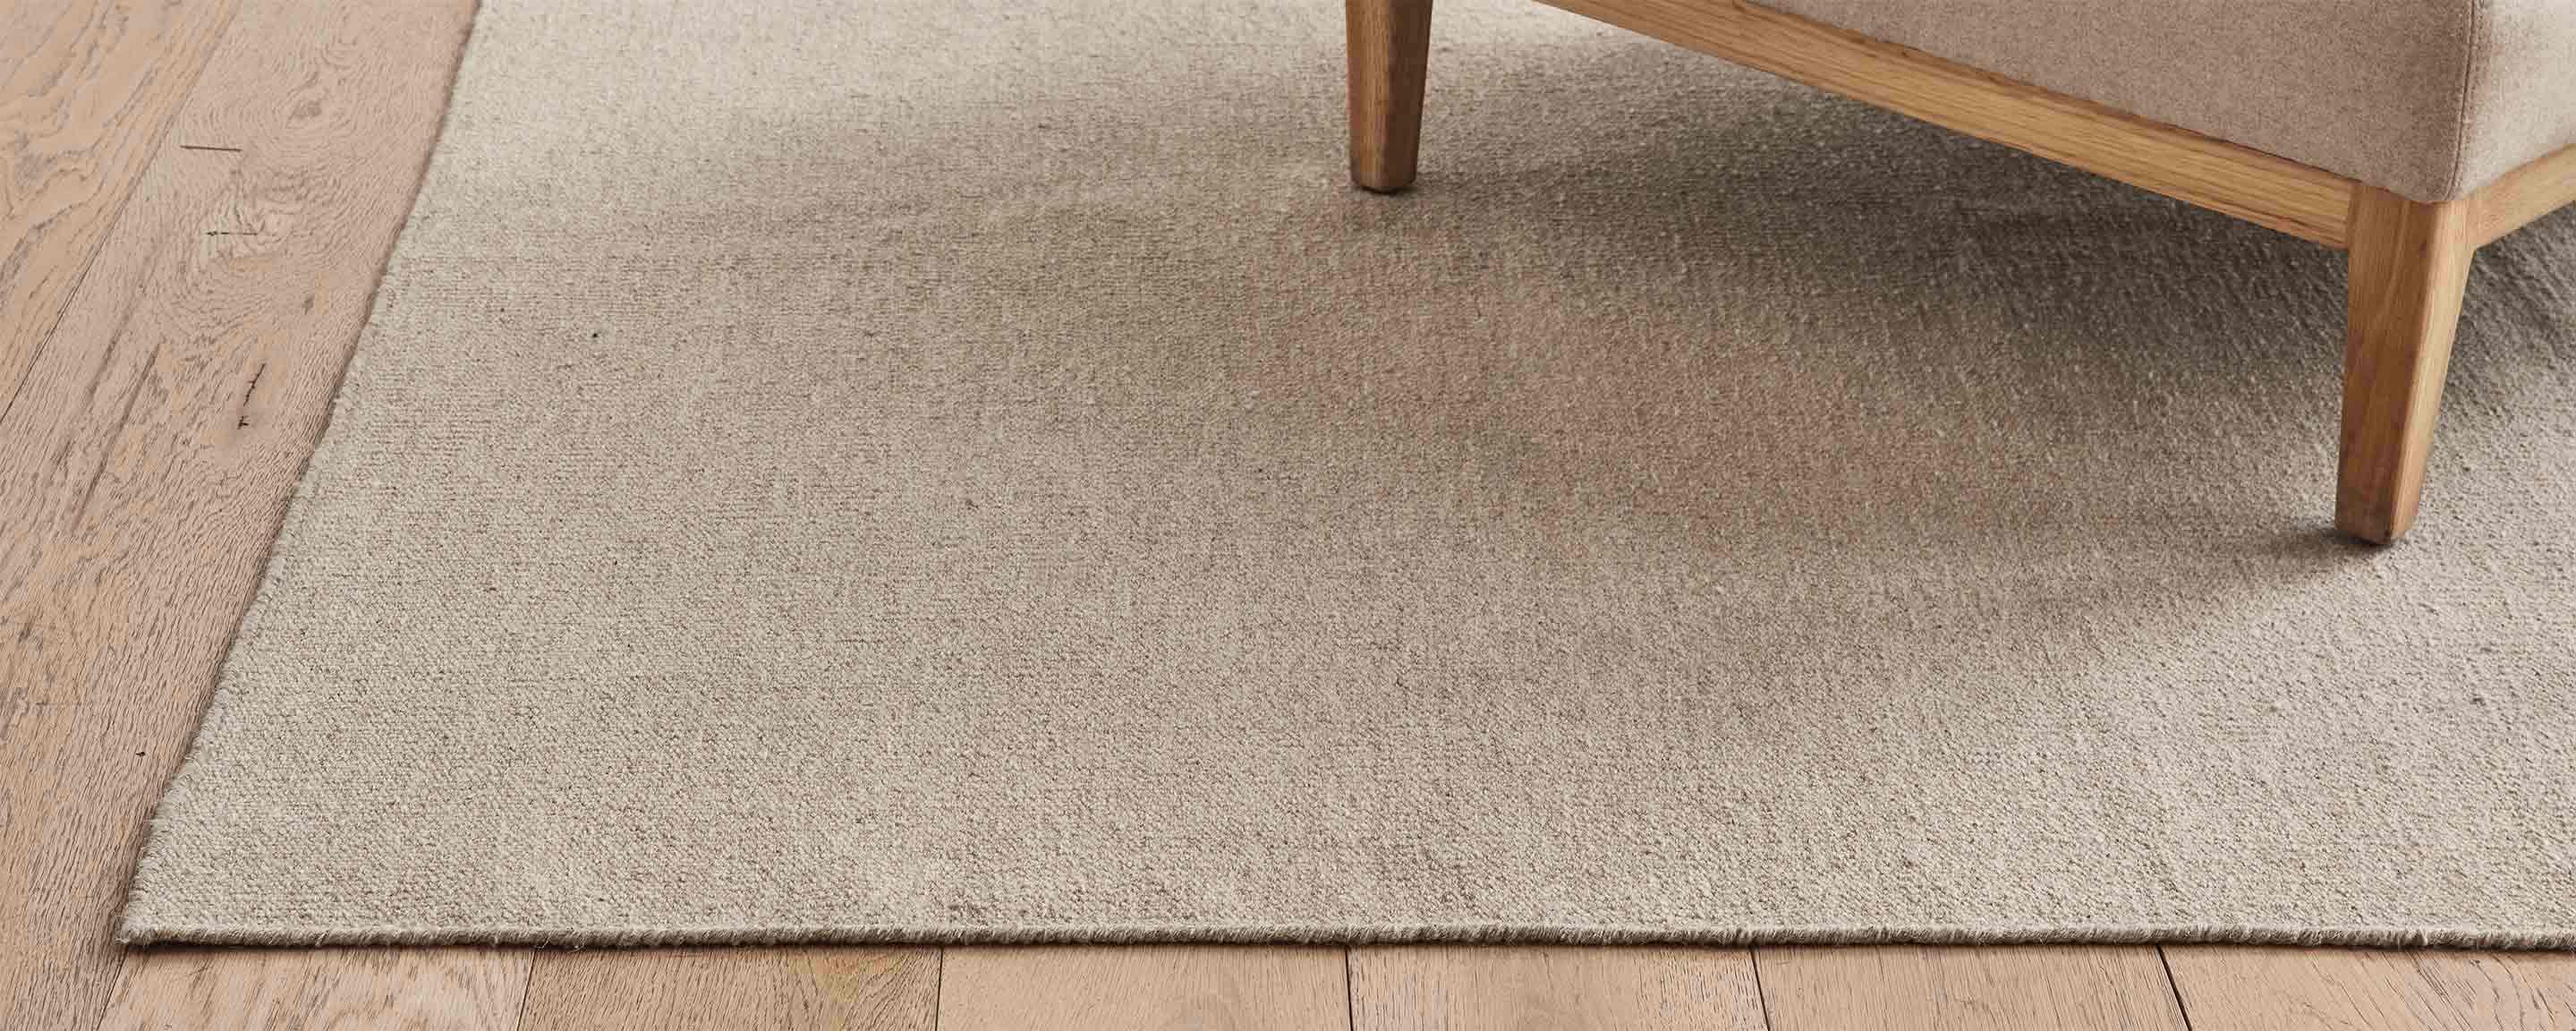 acadia sand rugs